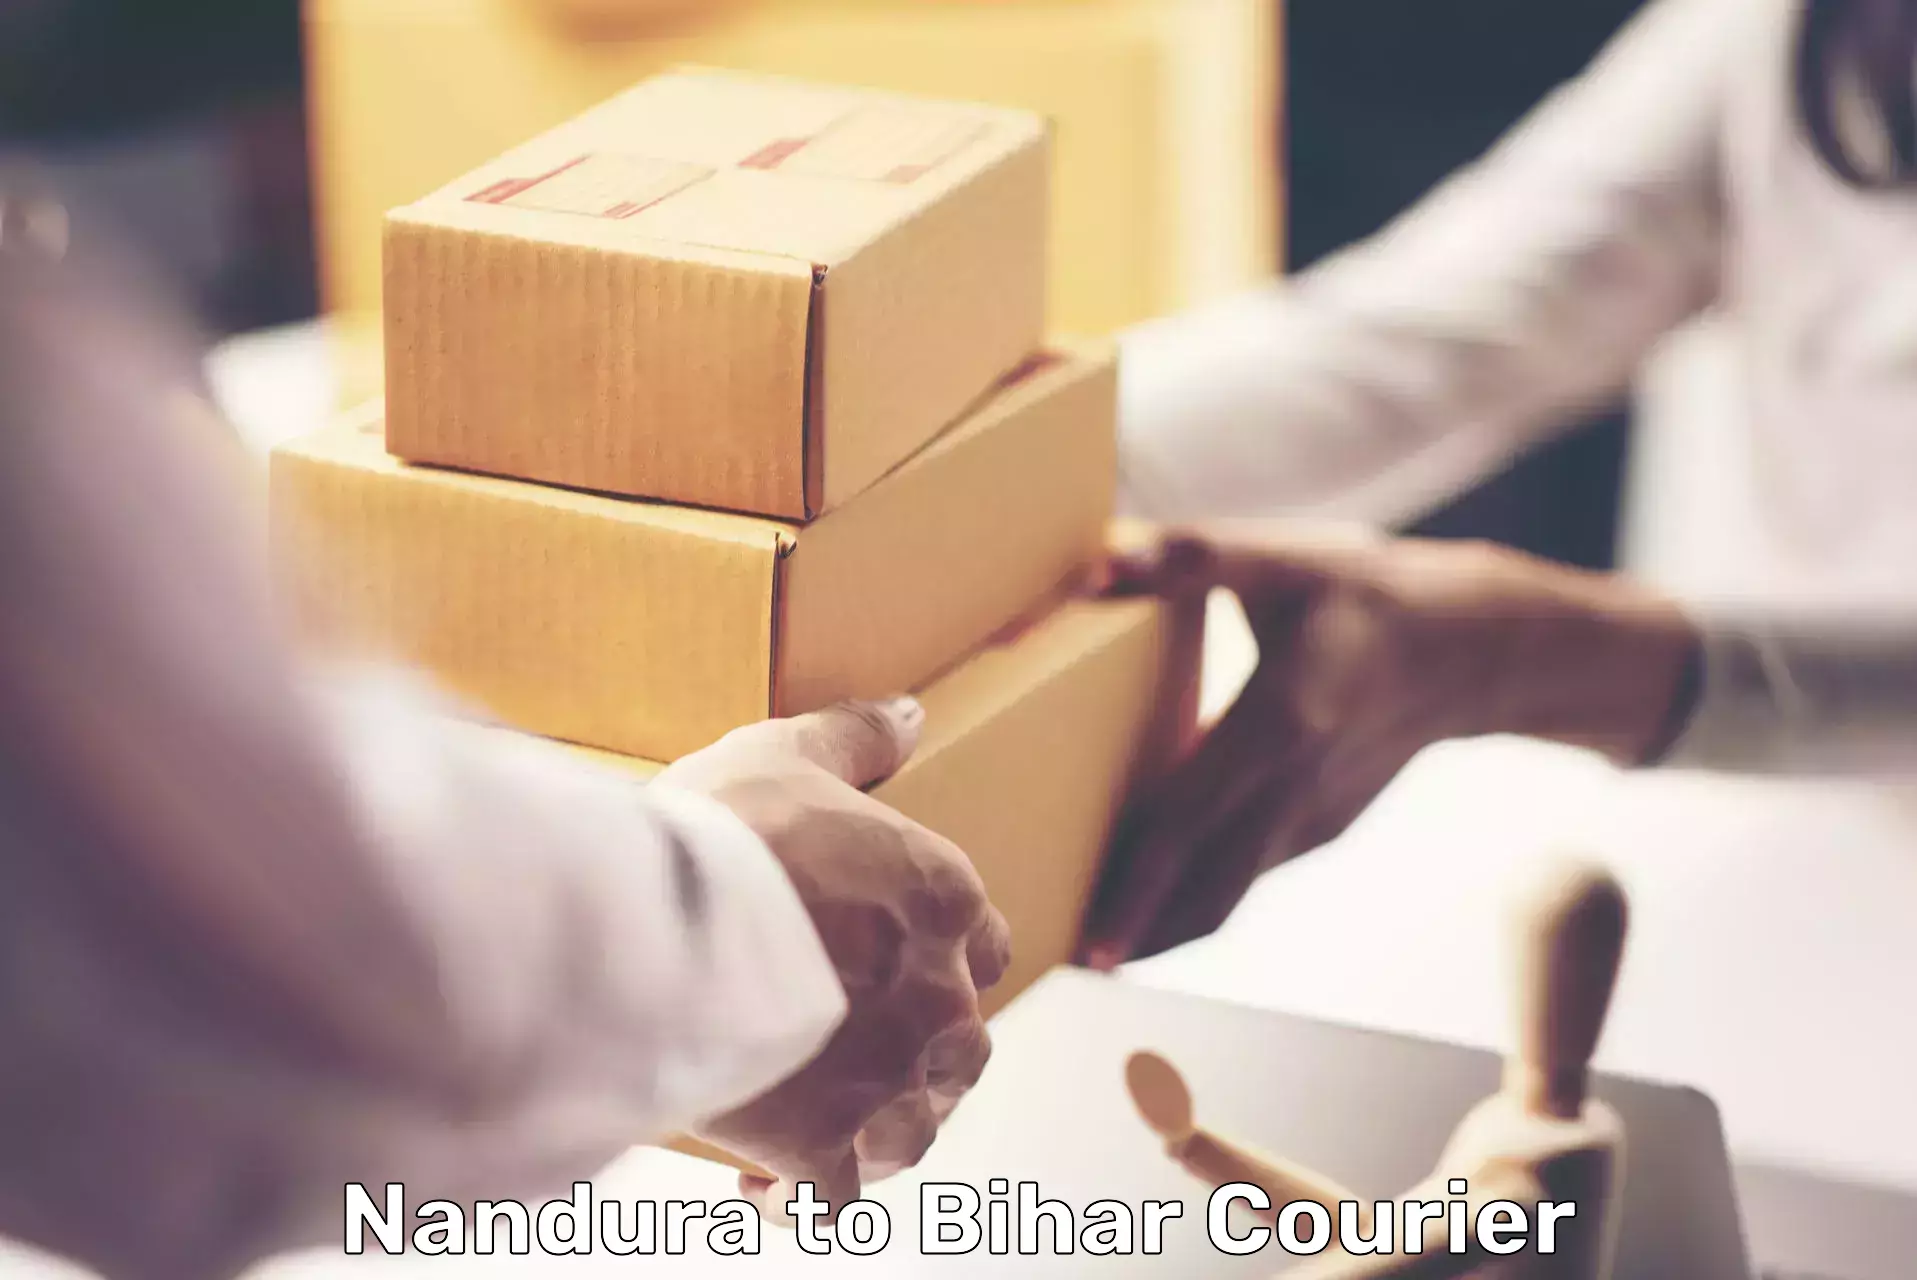 Customer-centric shipping Nandura to Bikramganj